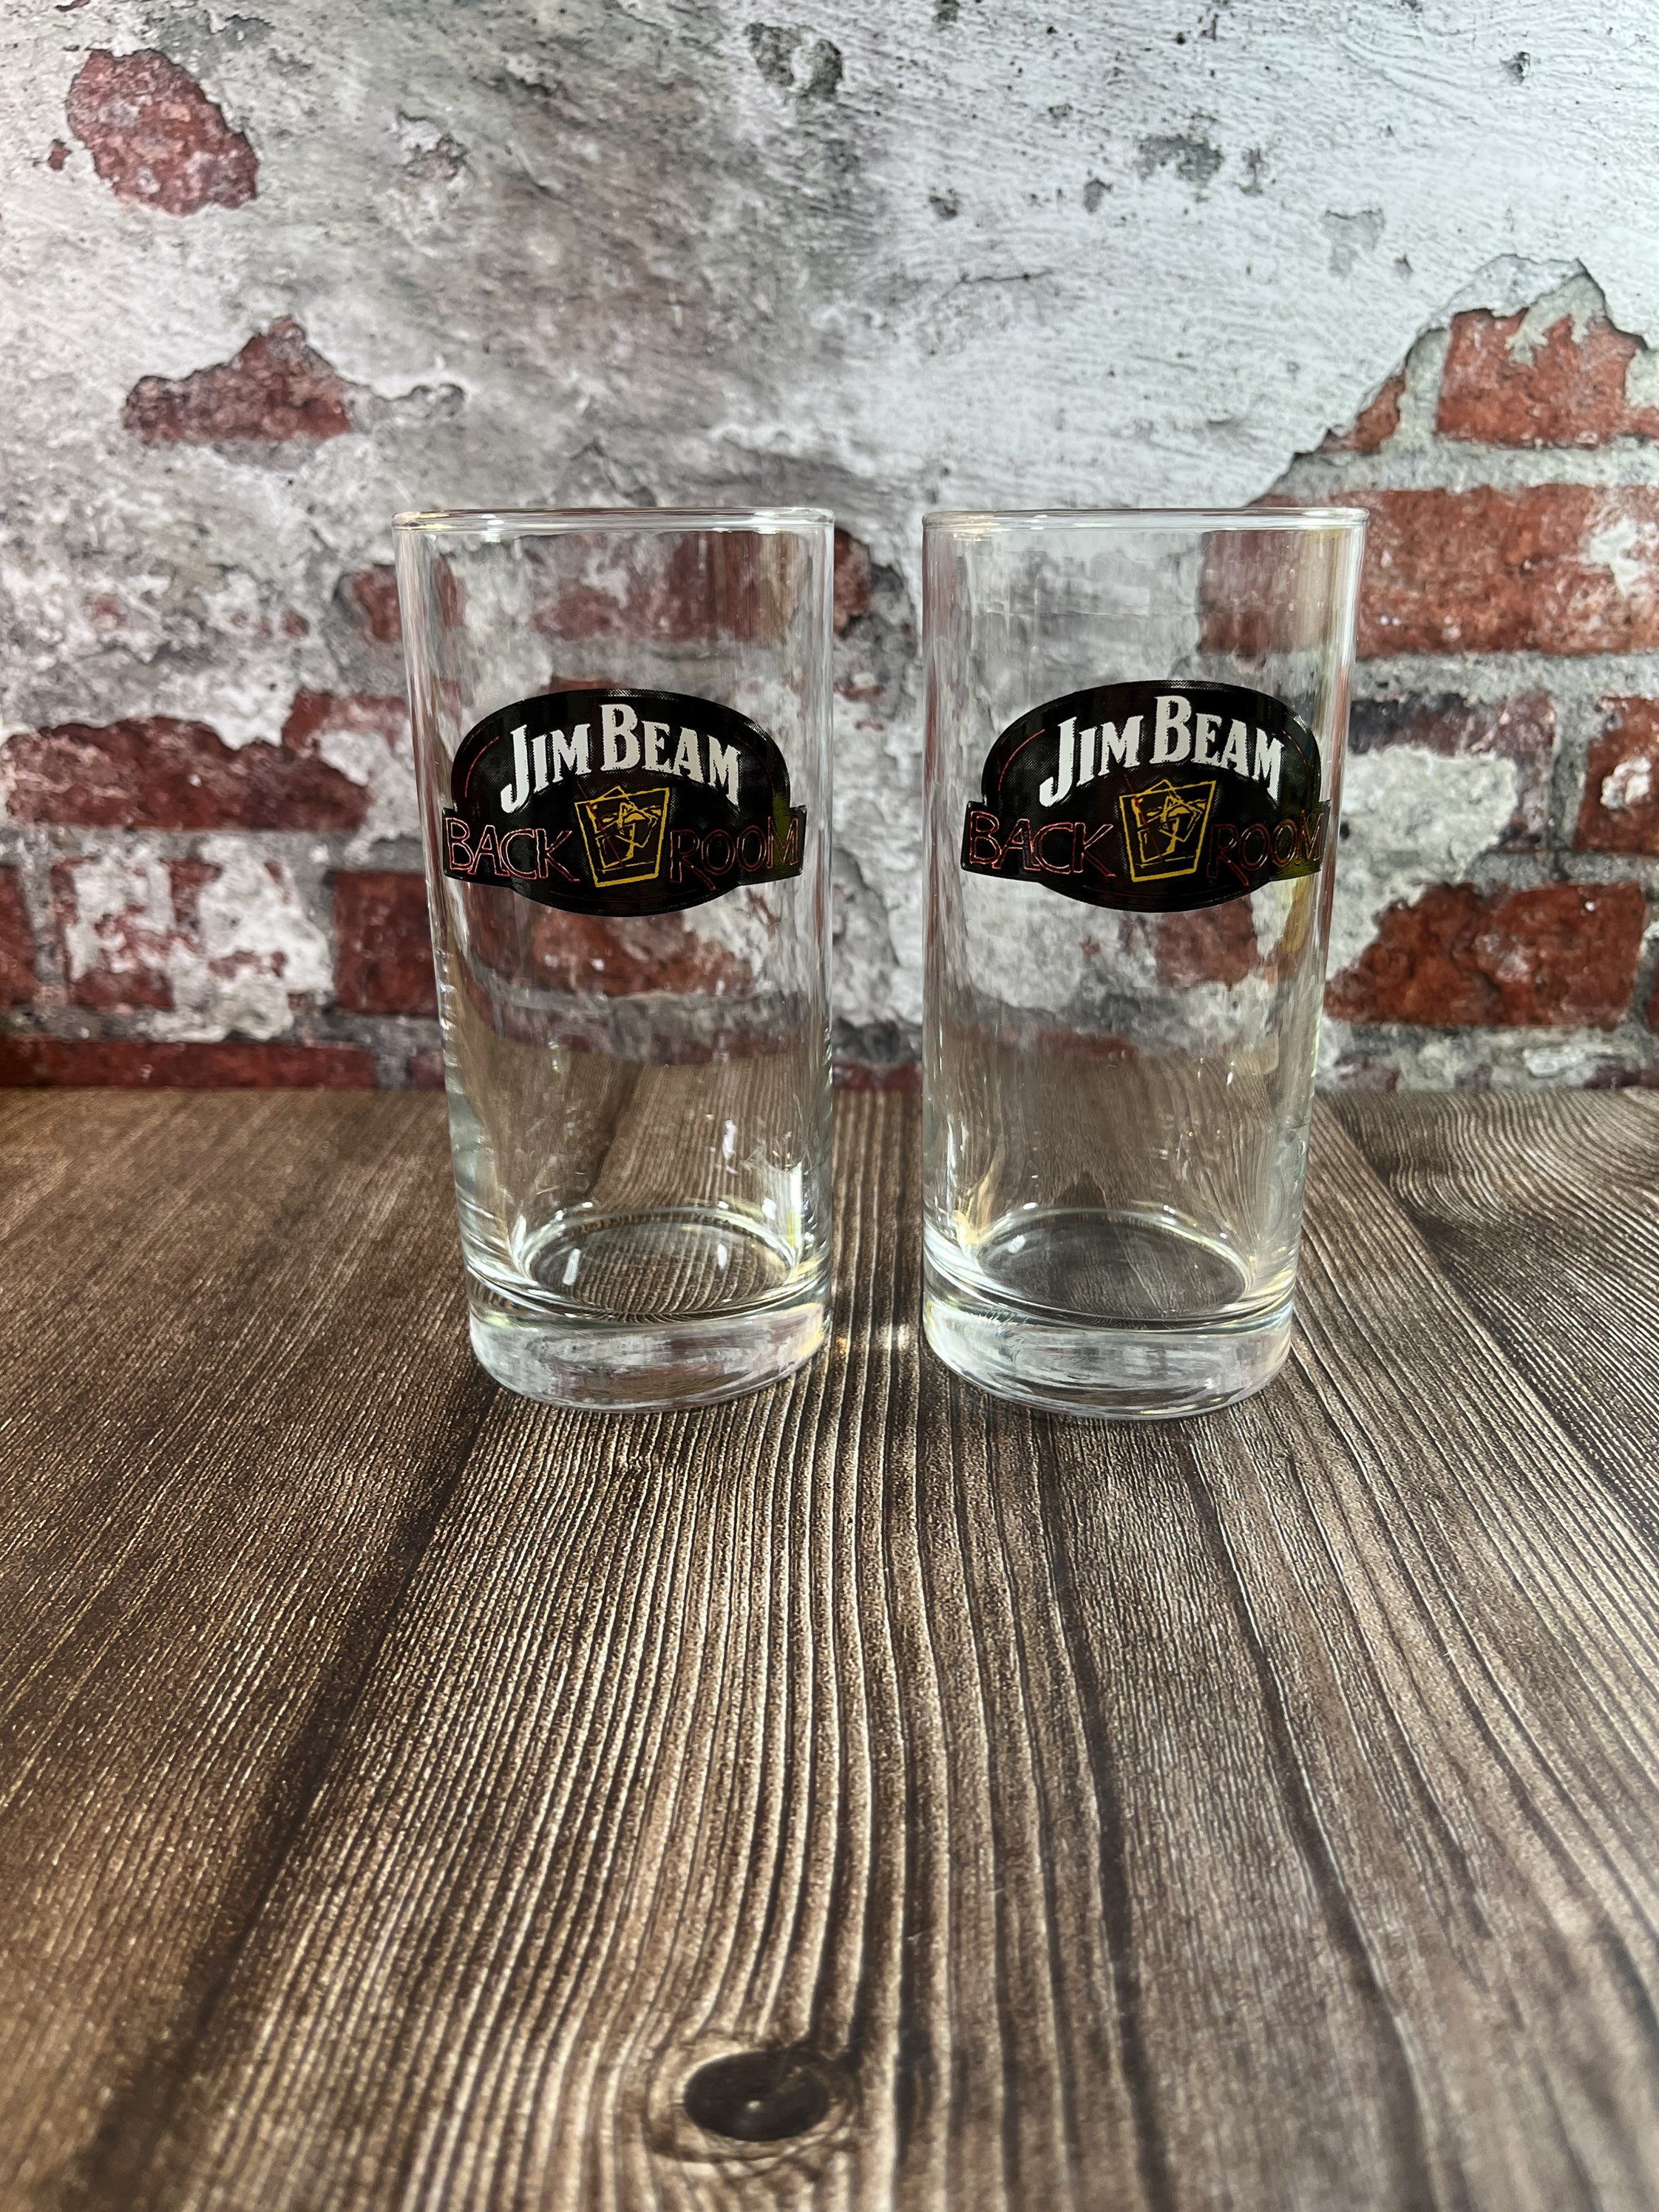 Lot Jim Beam Bourbon Whiskey Rocks Glasses & Plastic Travel Coffee Mug Bar  Glass